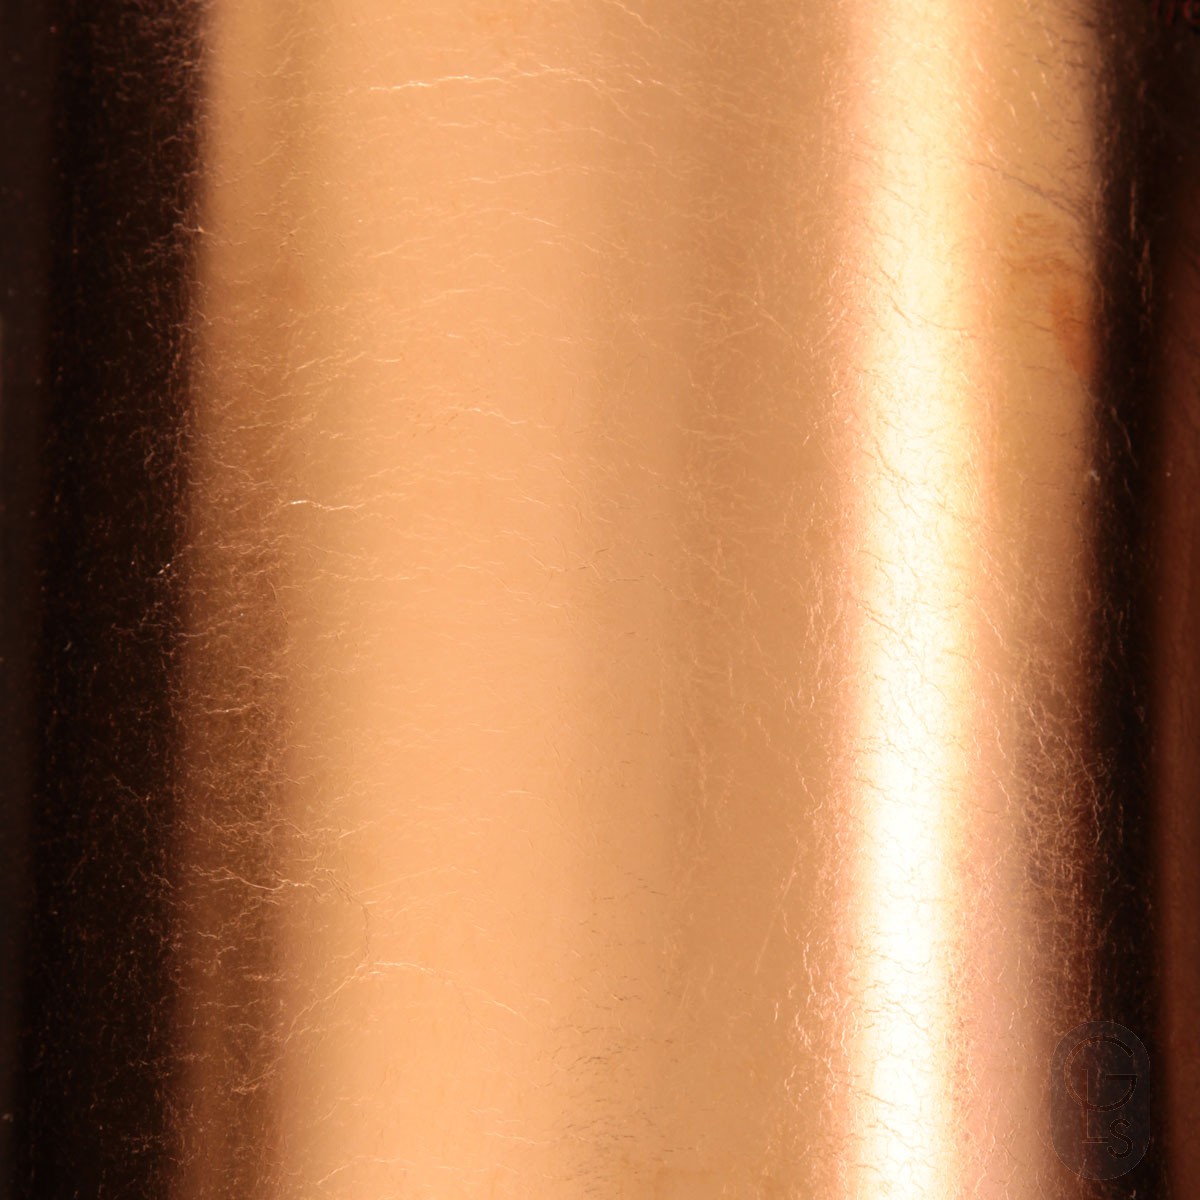 Schlag Metal - Copper Loose - 25 Leaf Booklet